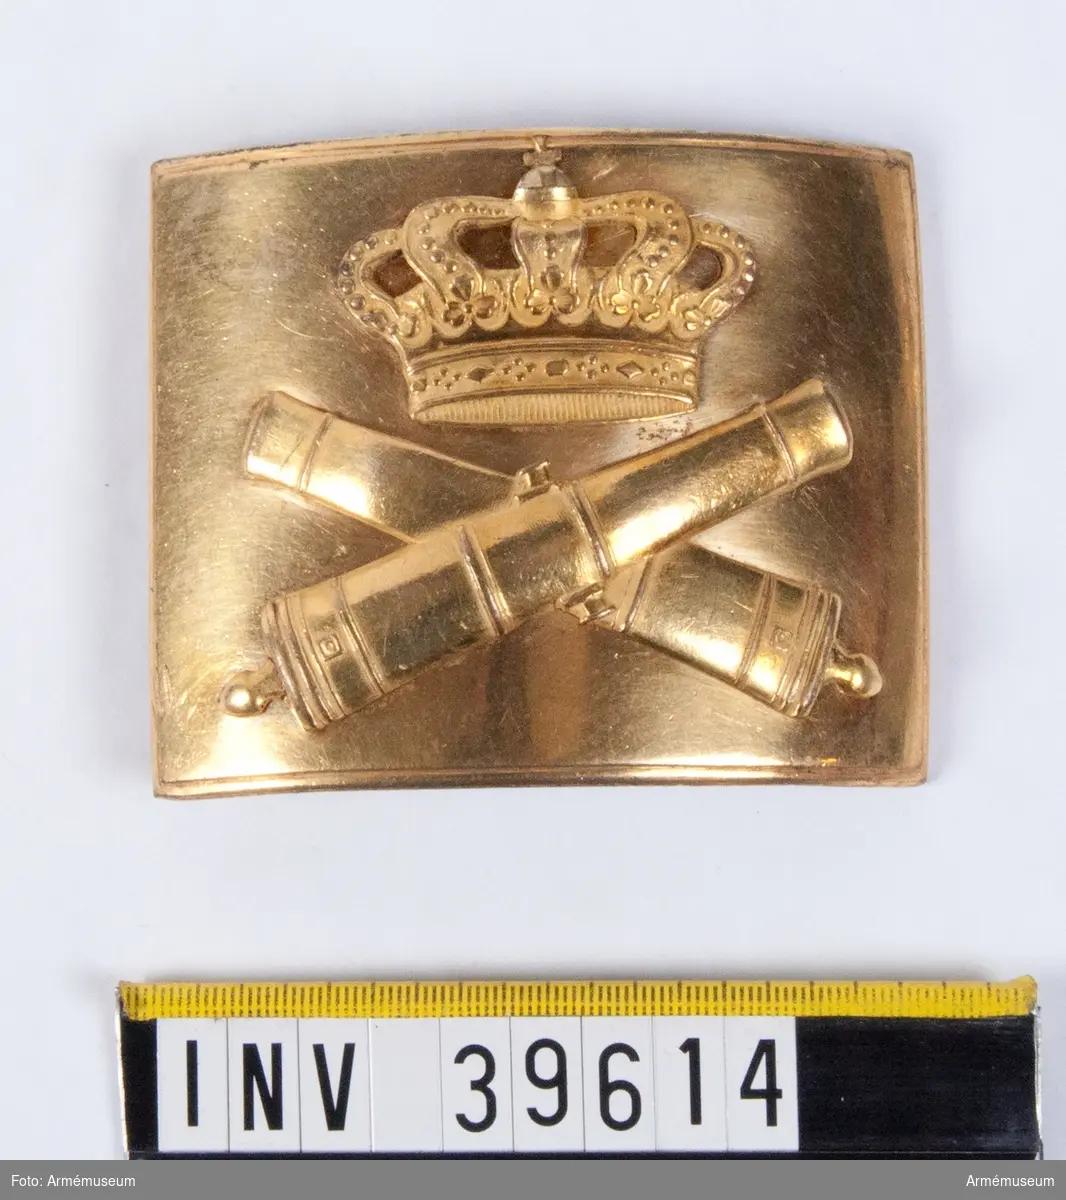 Grupp C II.
Värjgehängsspänne m/1794 för officer vid artilleriet, Sverige.